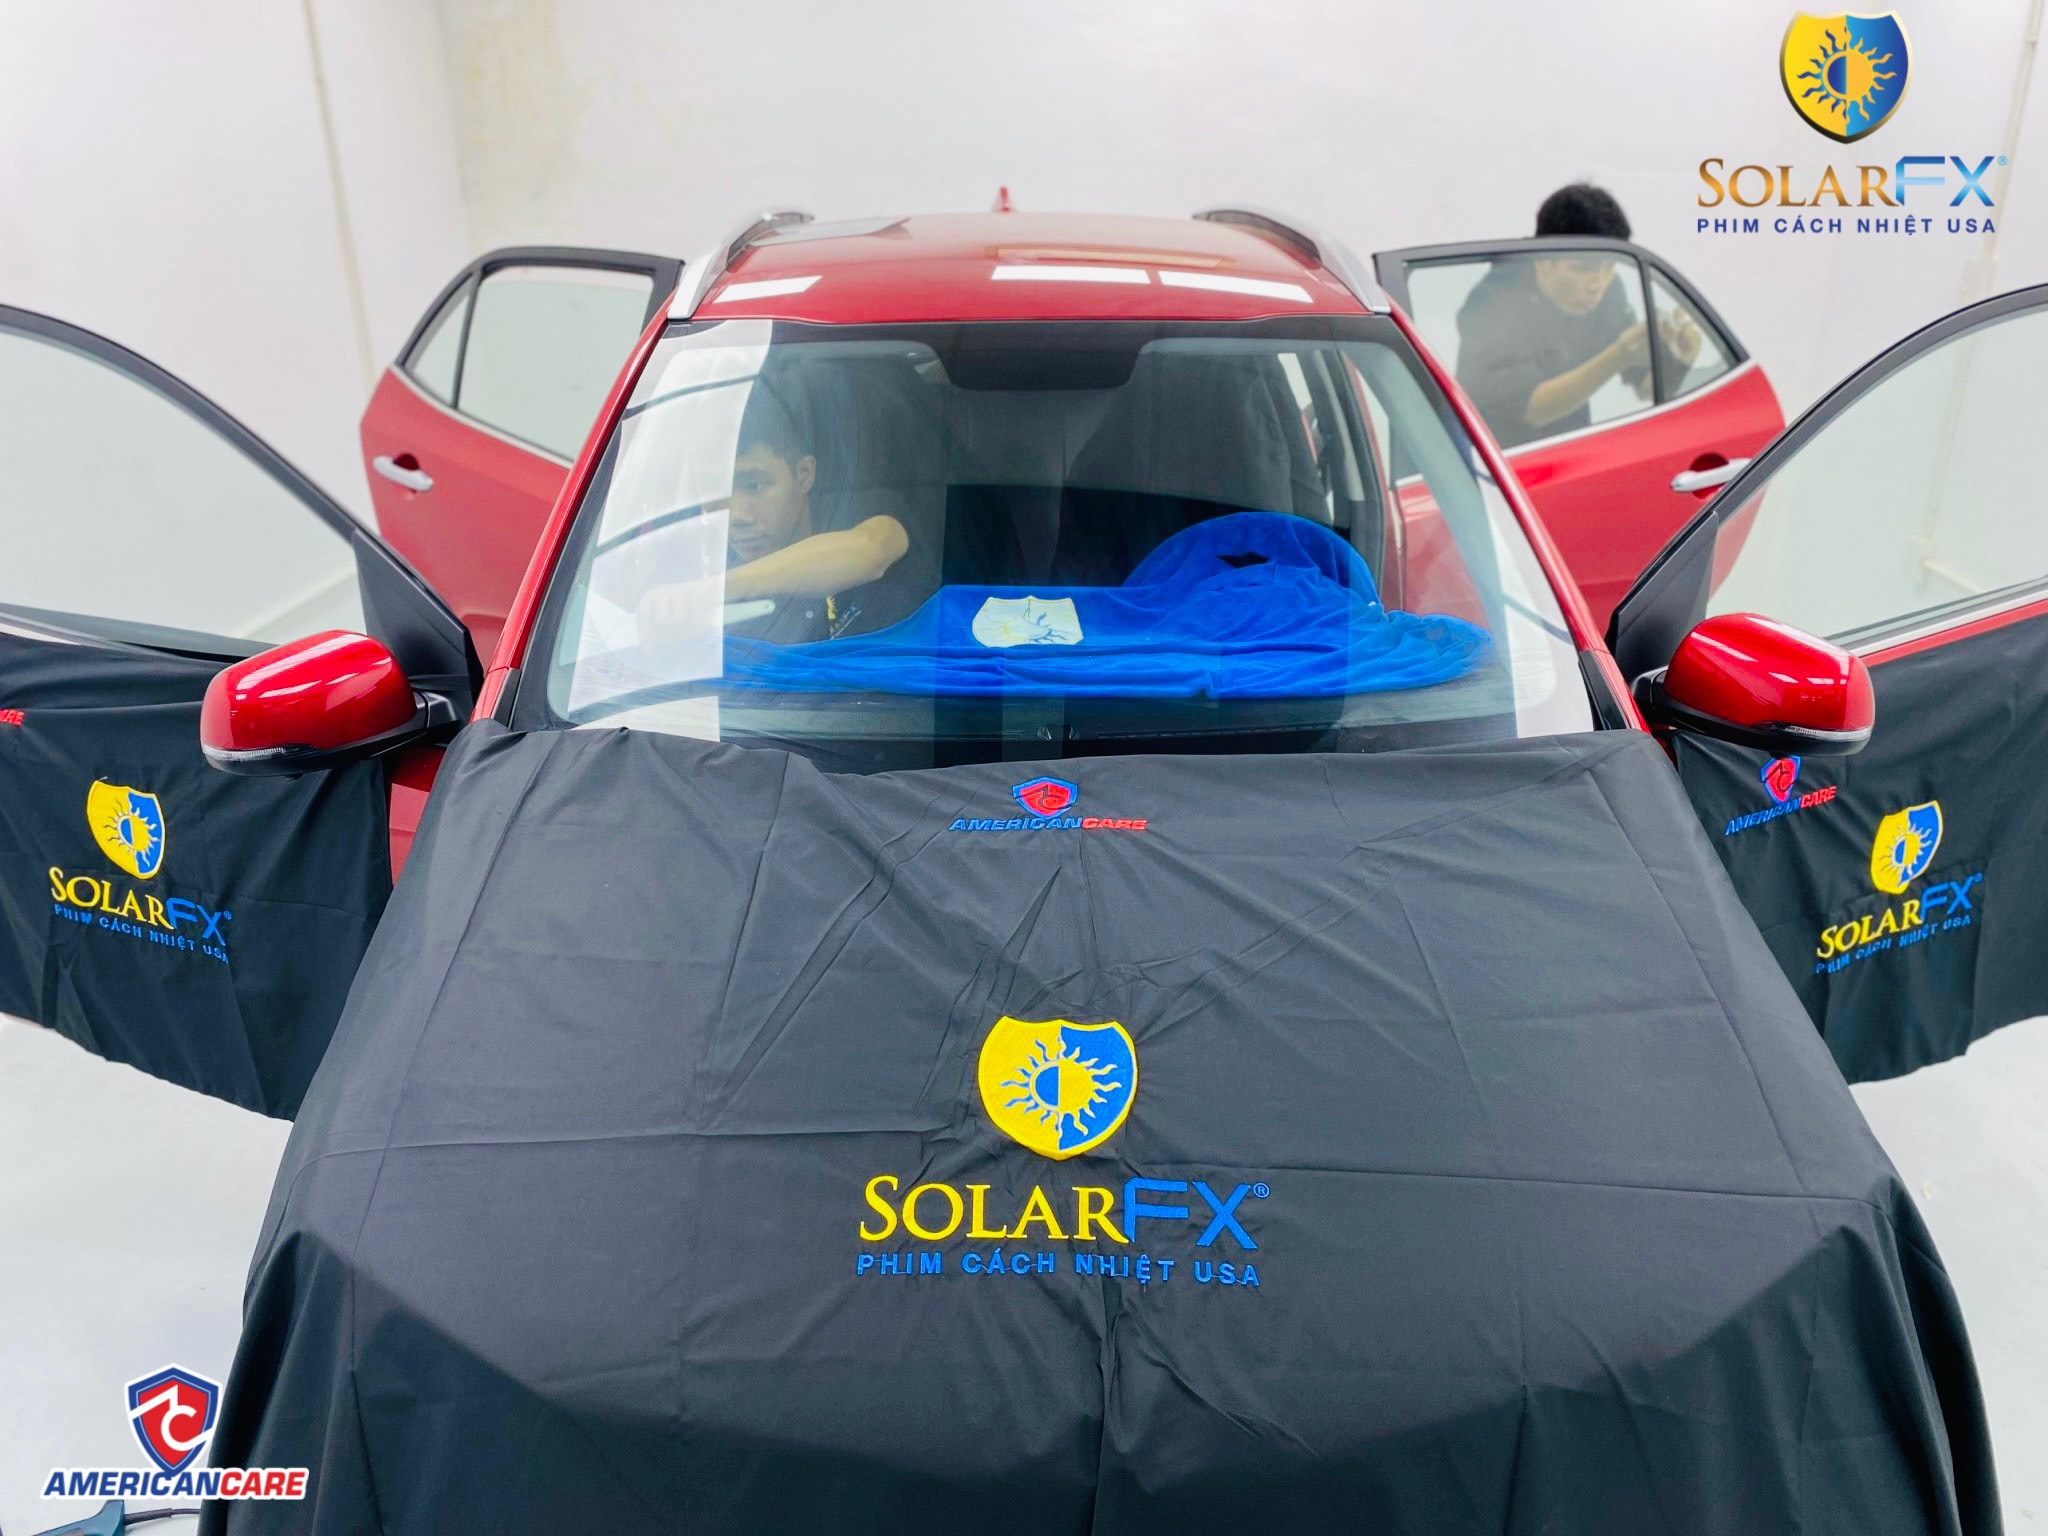 Chiếc xe đầu tiên được thử nghiệm cạo keo thi công full xe gói phim cách nhiệt SolarFX tại Quang Hằng Auto